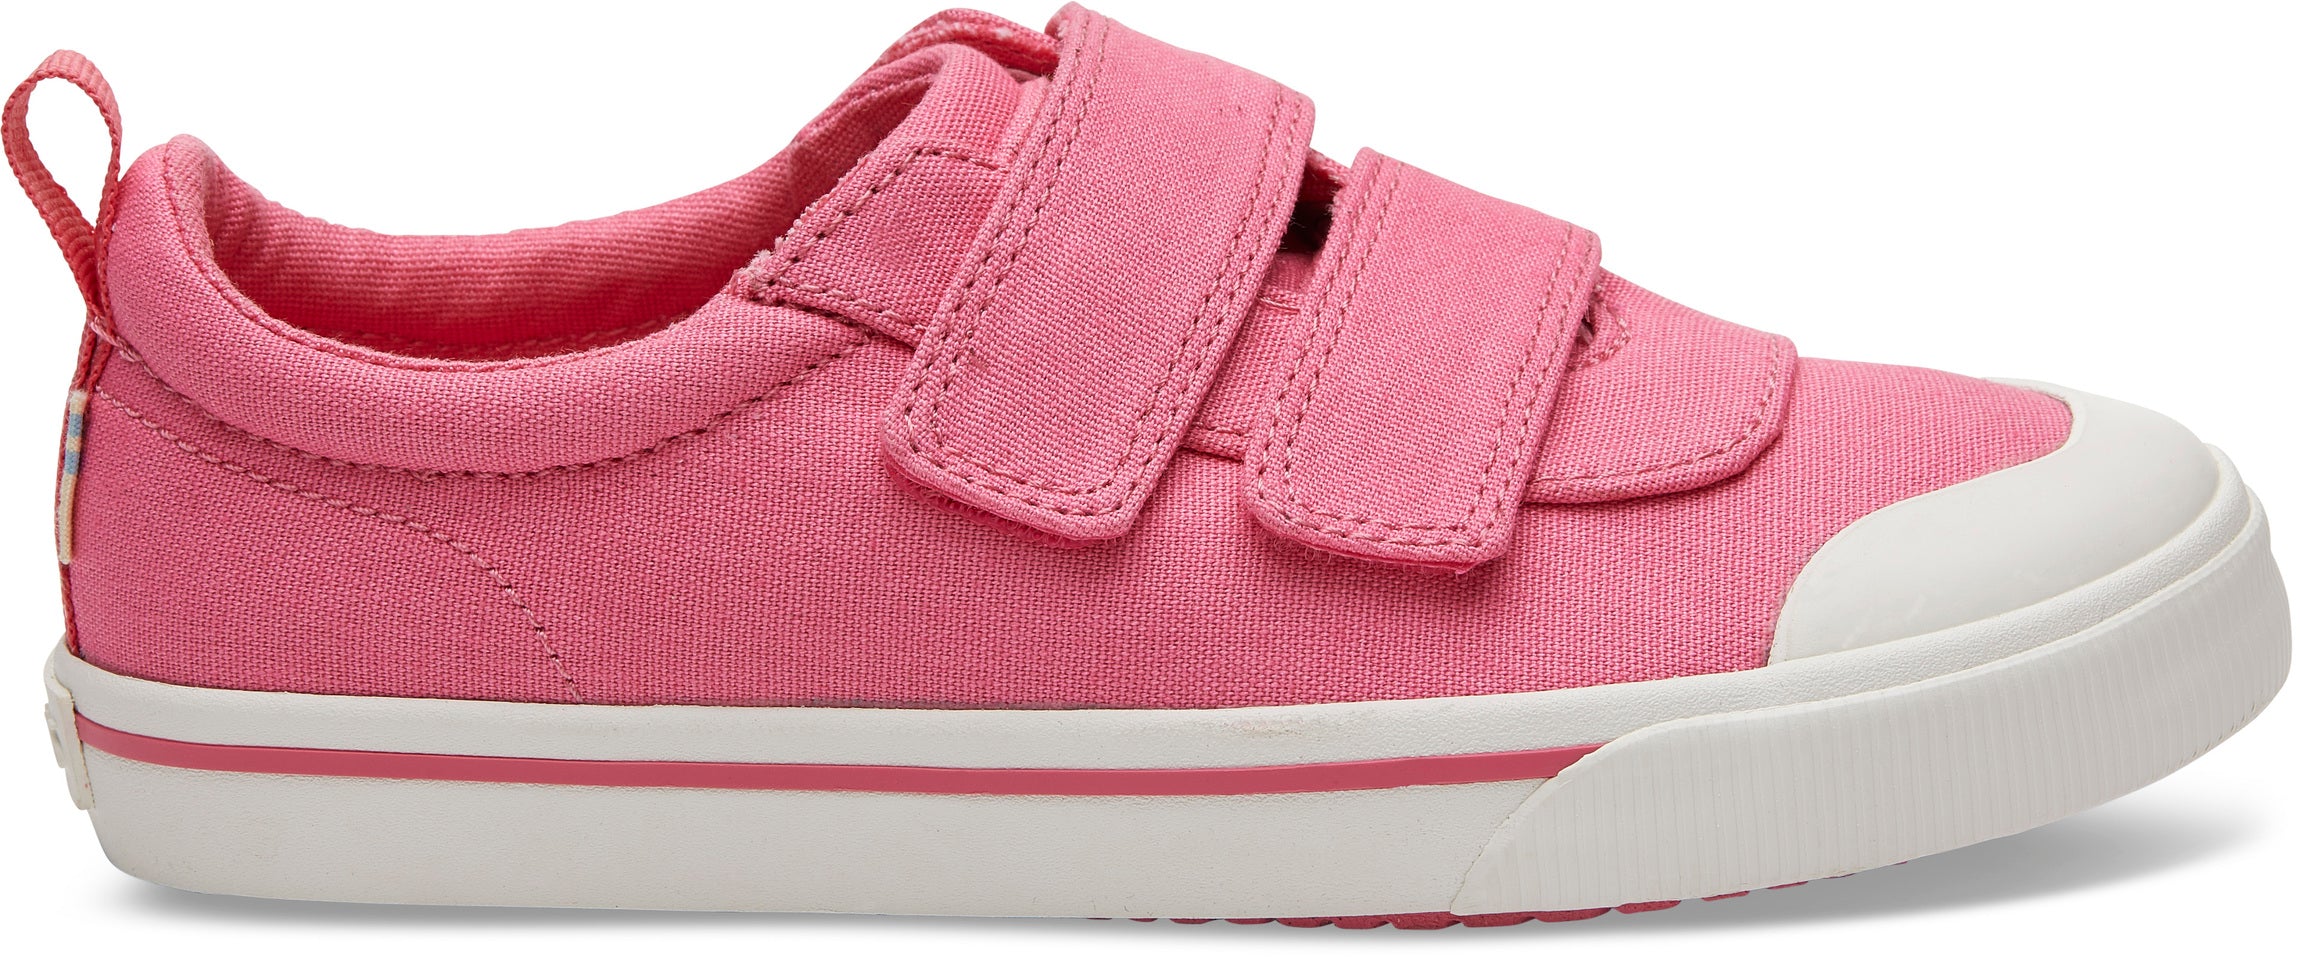 Detské ružové tenisky TOMS  Youth Doheny Sneakers